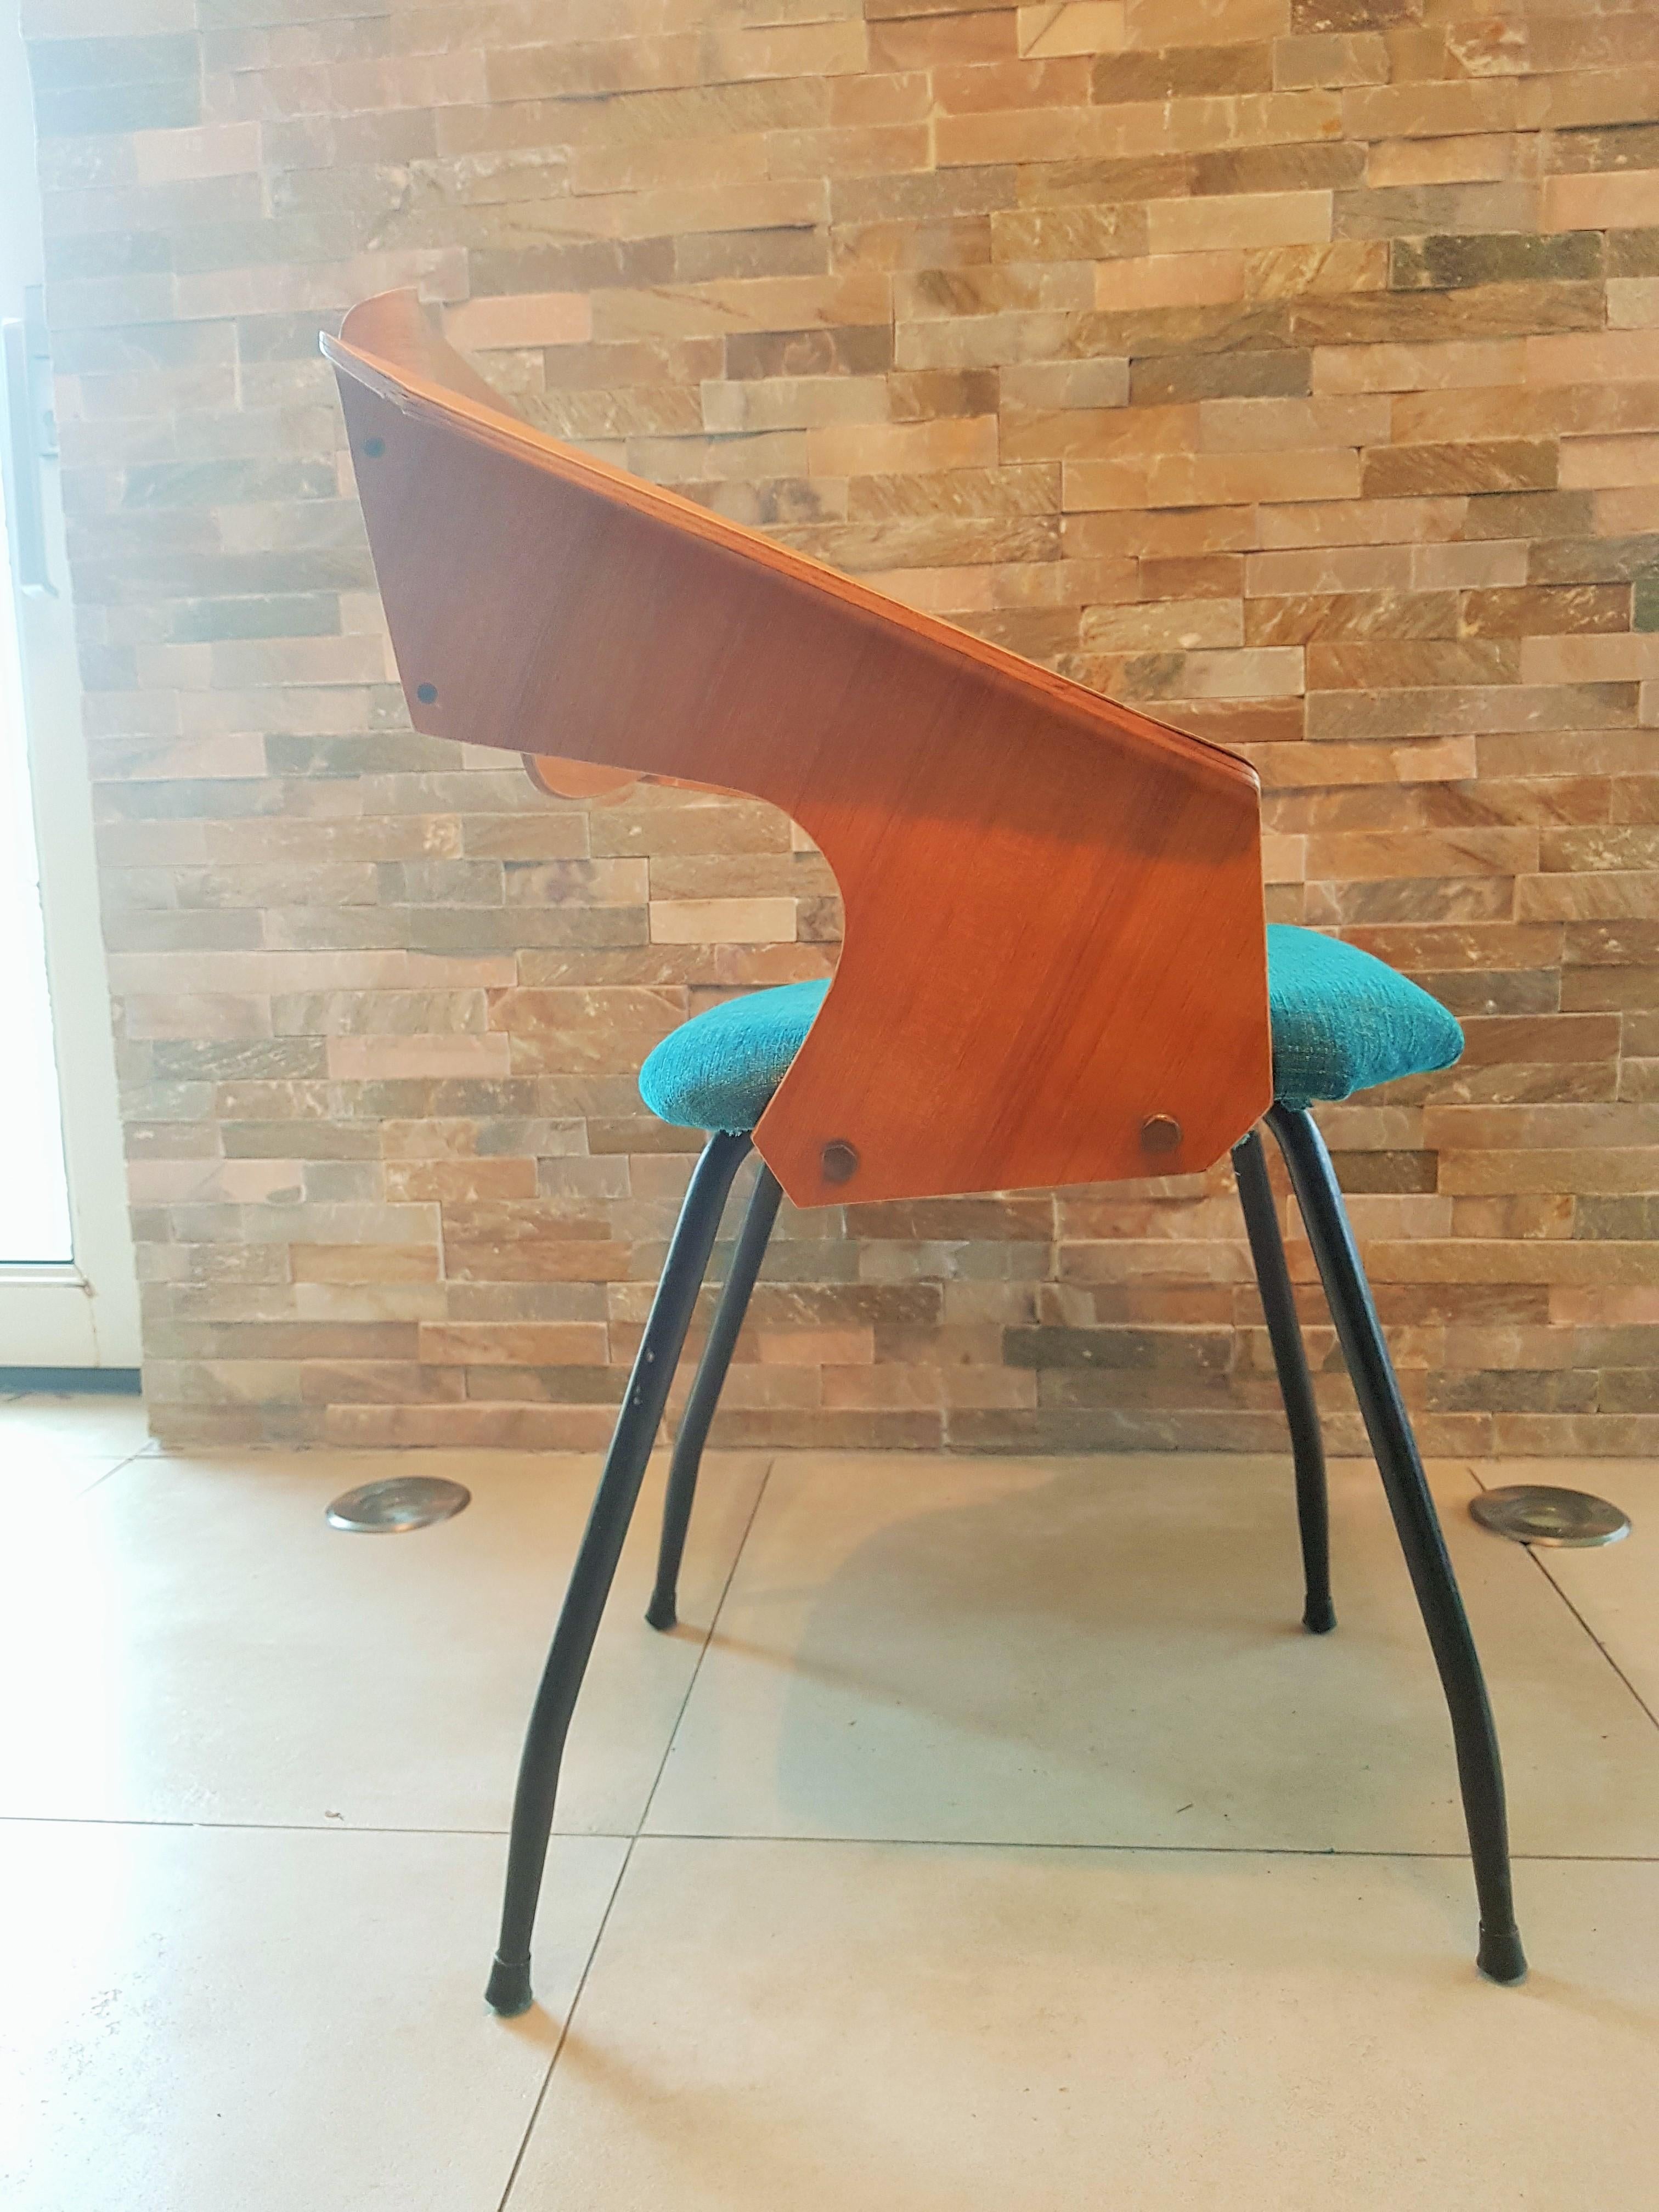 Deux belles chaises originales en bois courbé de Carlo Ratti, fabriquées par sa société Industria Legni Curvati, basée à Lissone, Milan.
New tapissé d'un tissu bicolore.